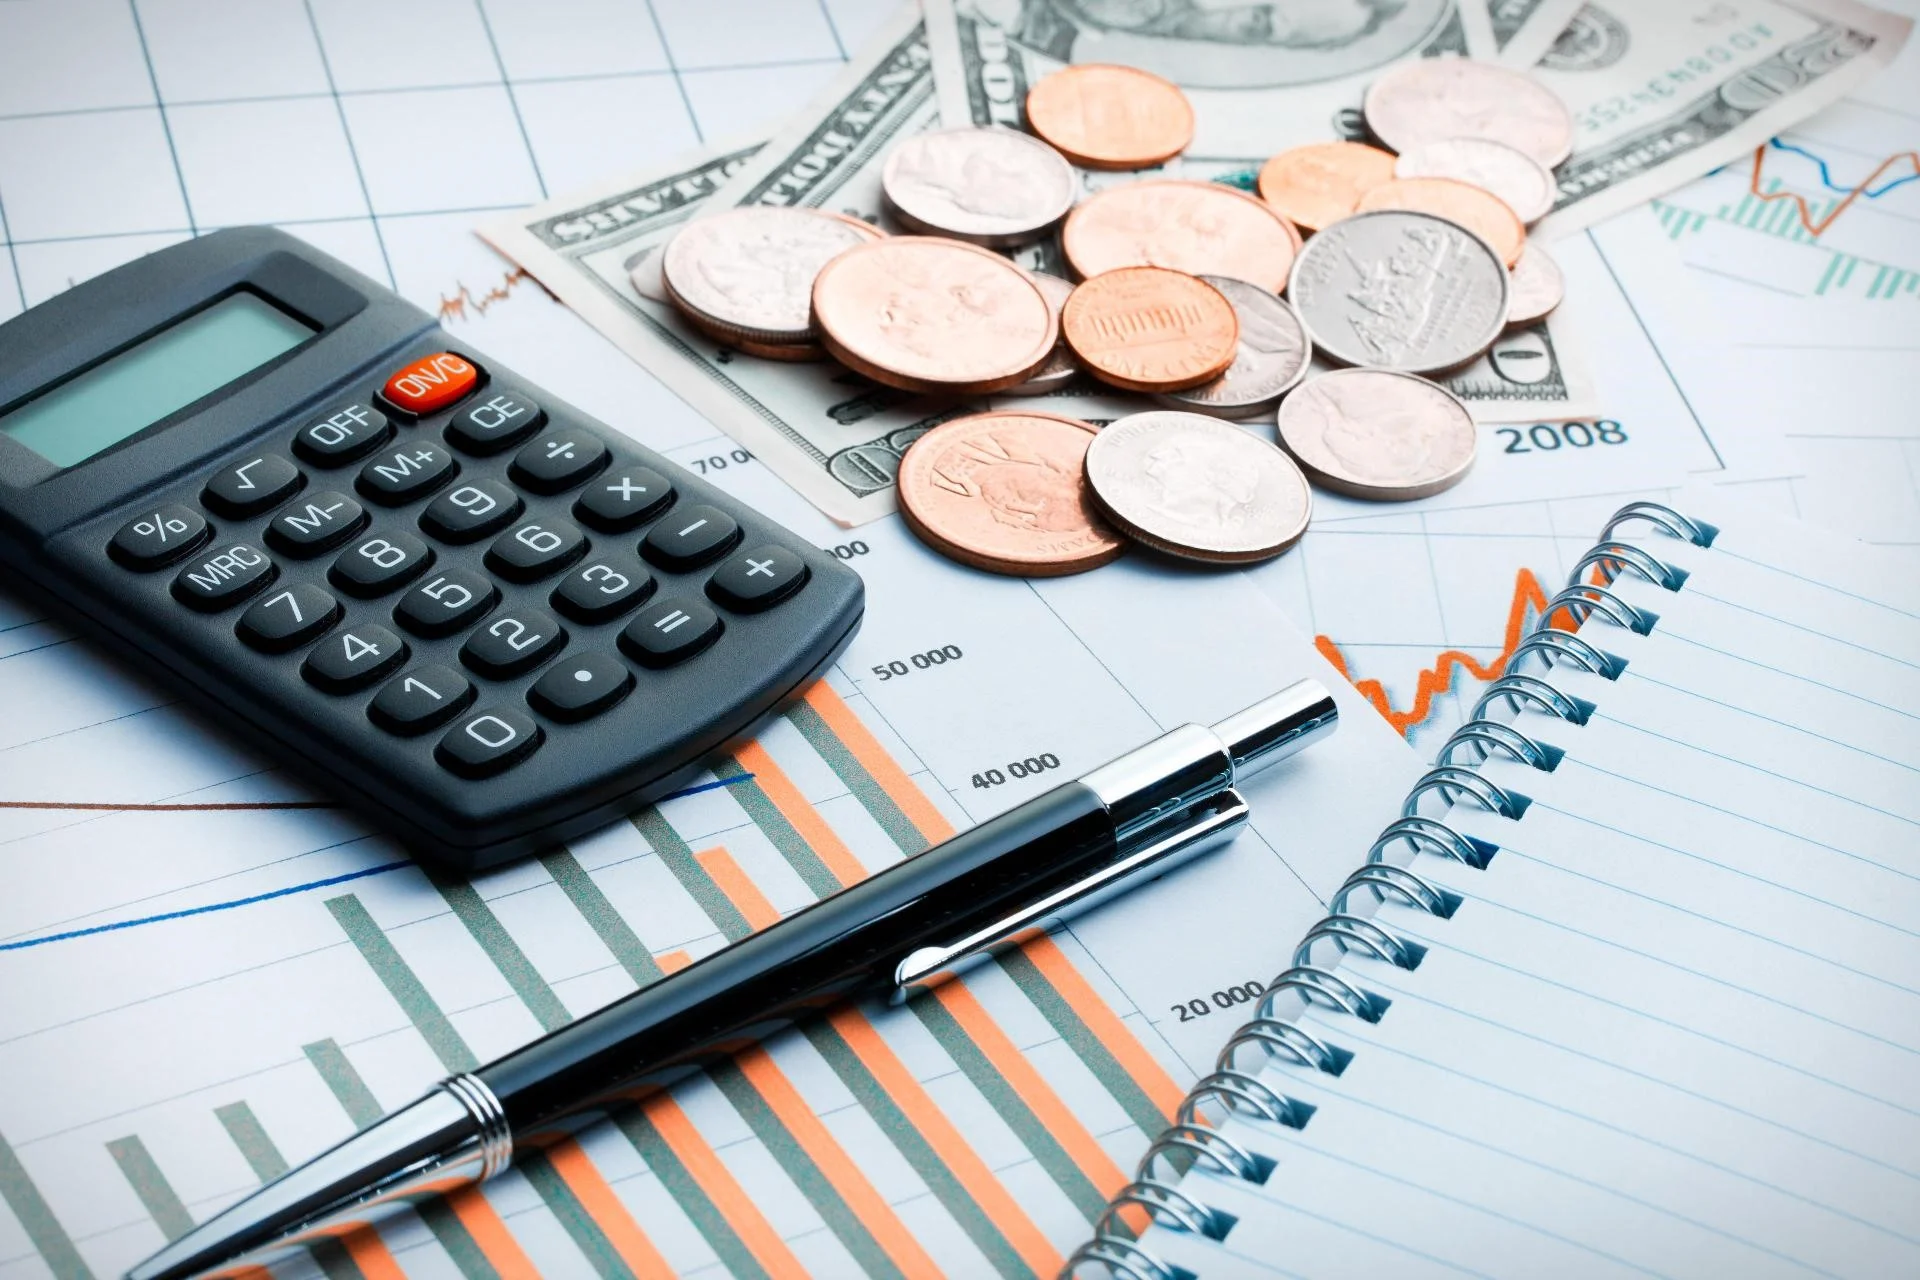 A imagem mostra uma calculadora, moedas, caneta e um bloco de notas sobre gráficos financeiros, elementos que comumente simbolizam a gestão financeira e a otimização fiscal, alinhando-se com o tema '5 formas de Reduzir Impostos da sua Empresa'.